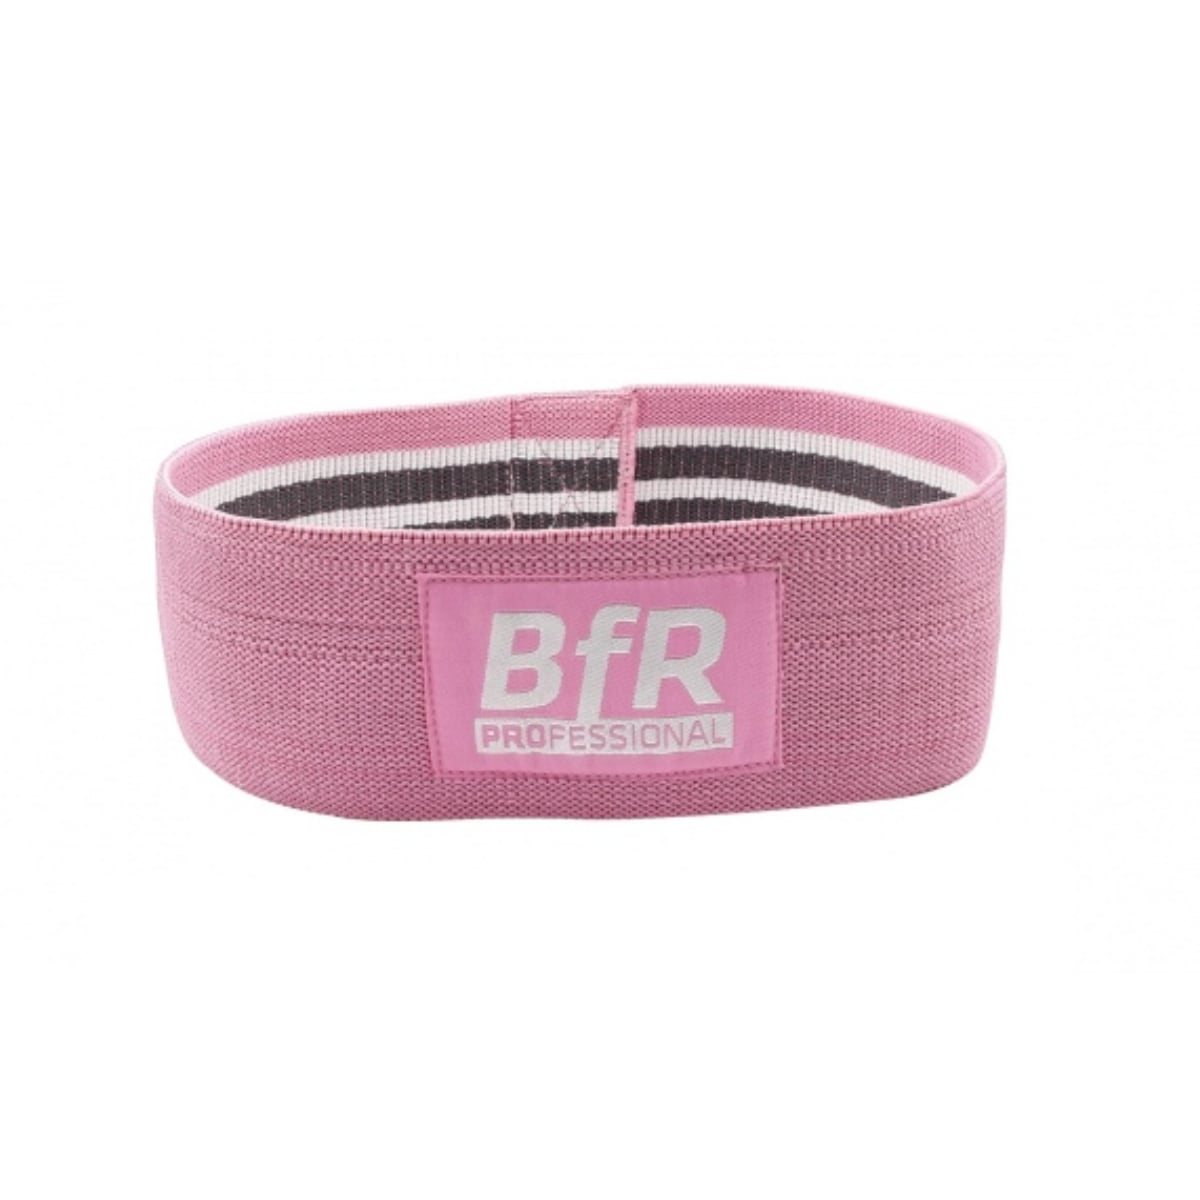 Brug Bfr professional BfR Pro GluteBuilder Pink - Limited edition til en forbedret oplevelse